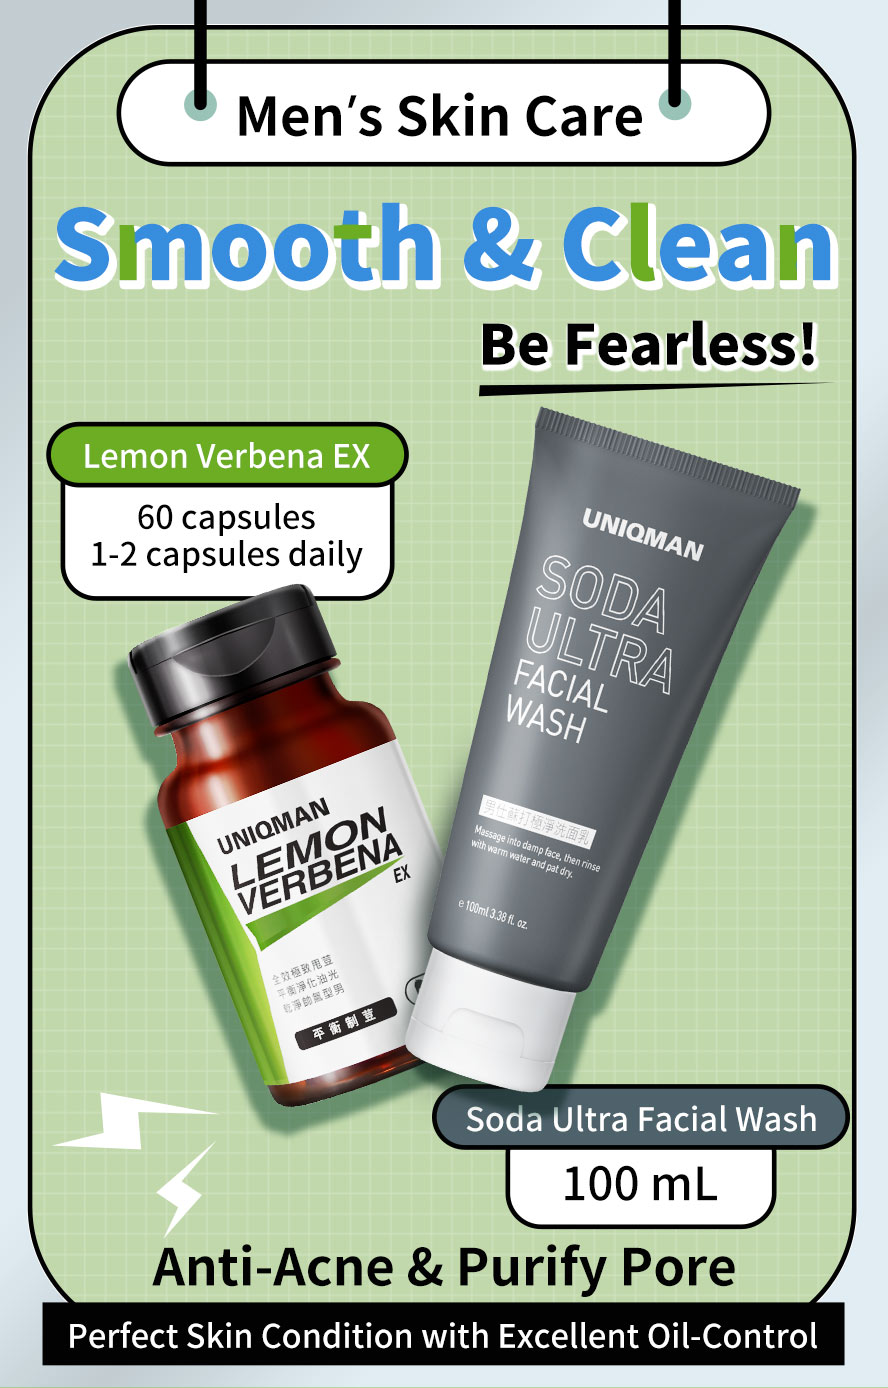 UNIQMAN Lemon Verbena EX + Soda Ultra Facial Wash promtoe anti-acne and pore purifying purpose.